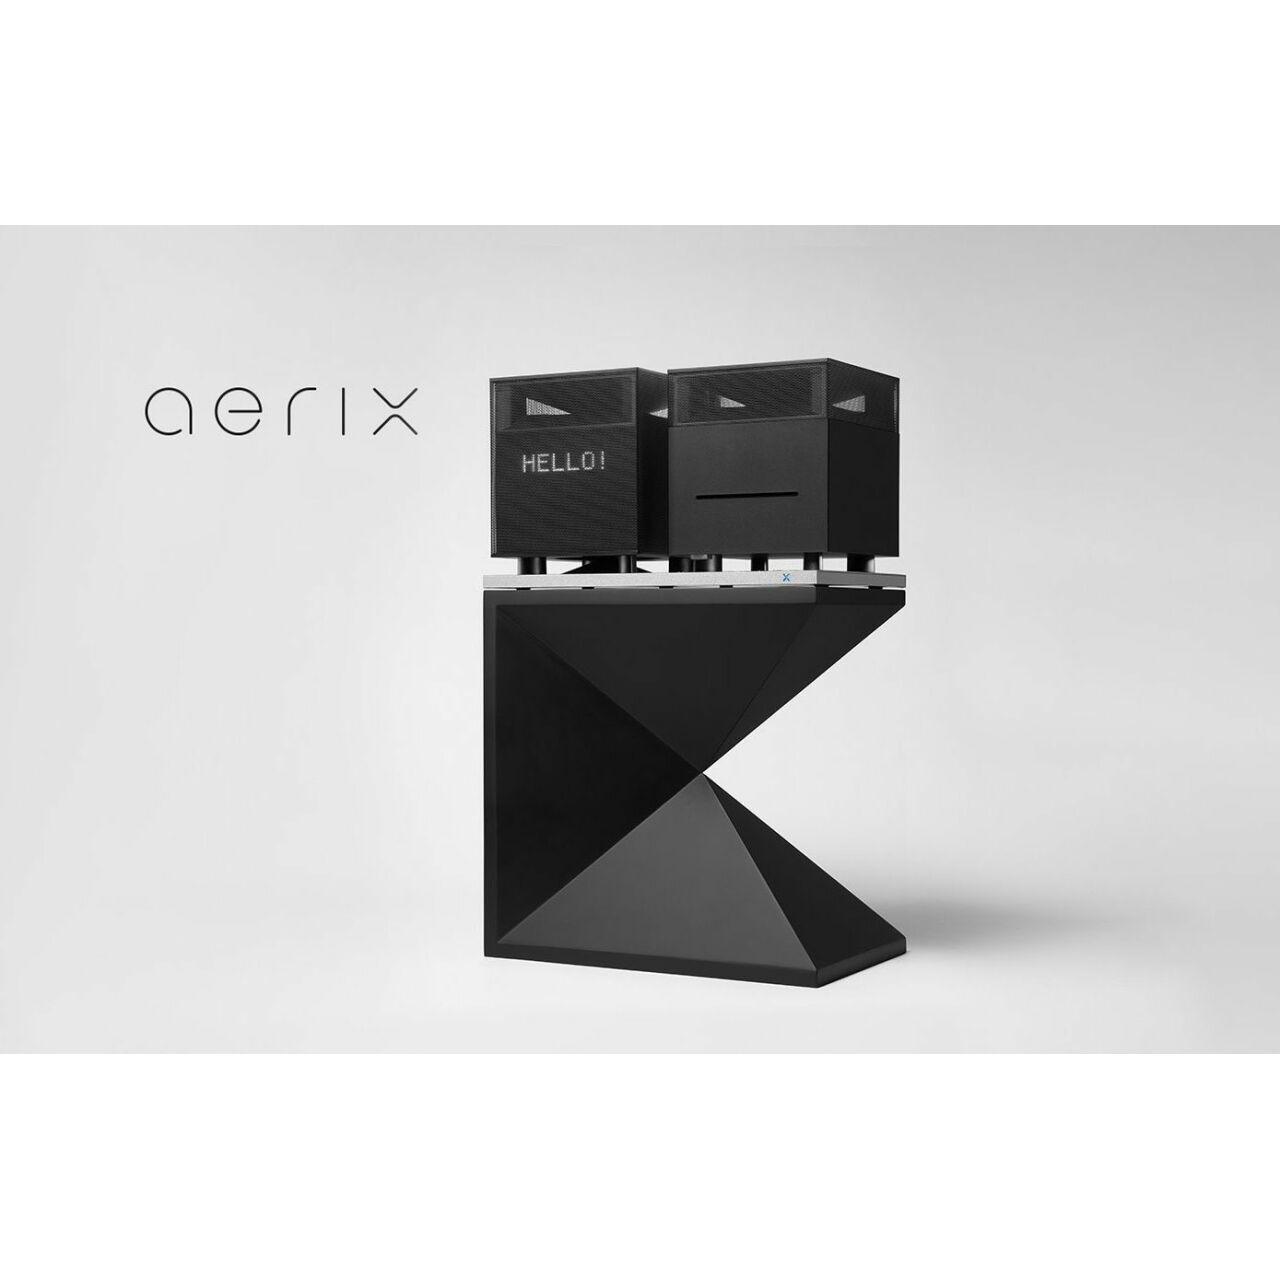 Aerix duet